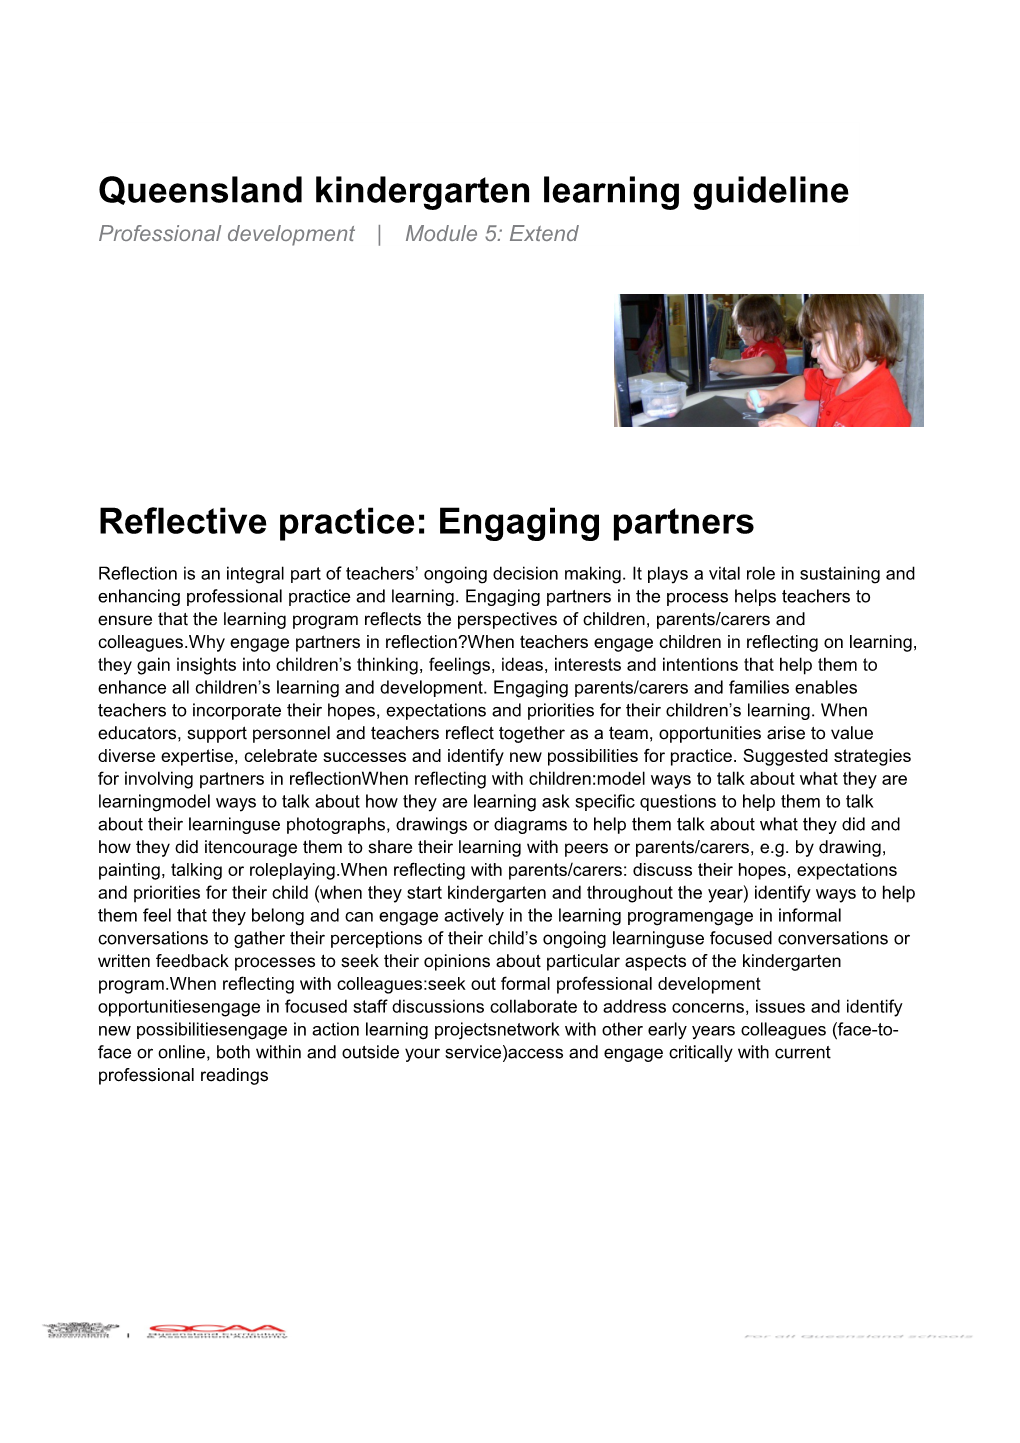 Kindergarten: Reflective Practice: Engaging Partners